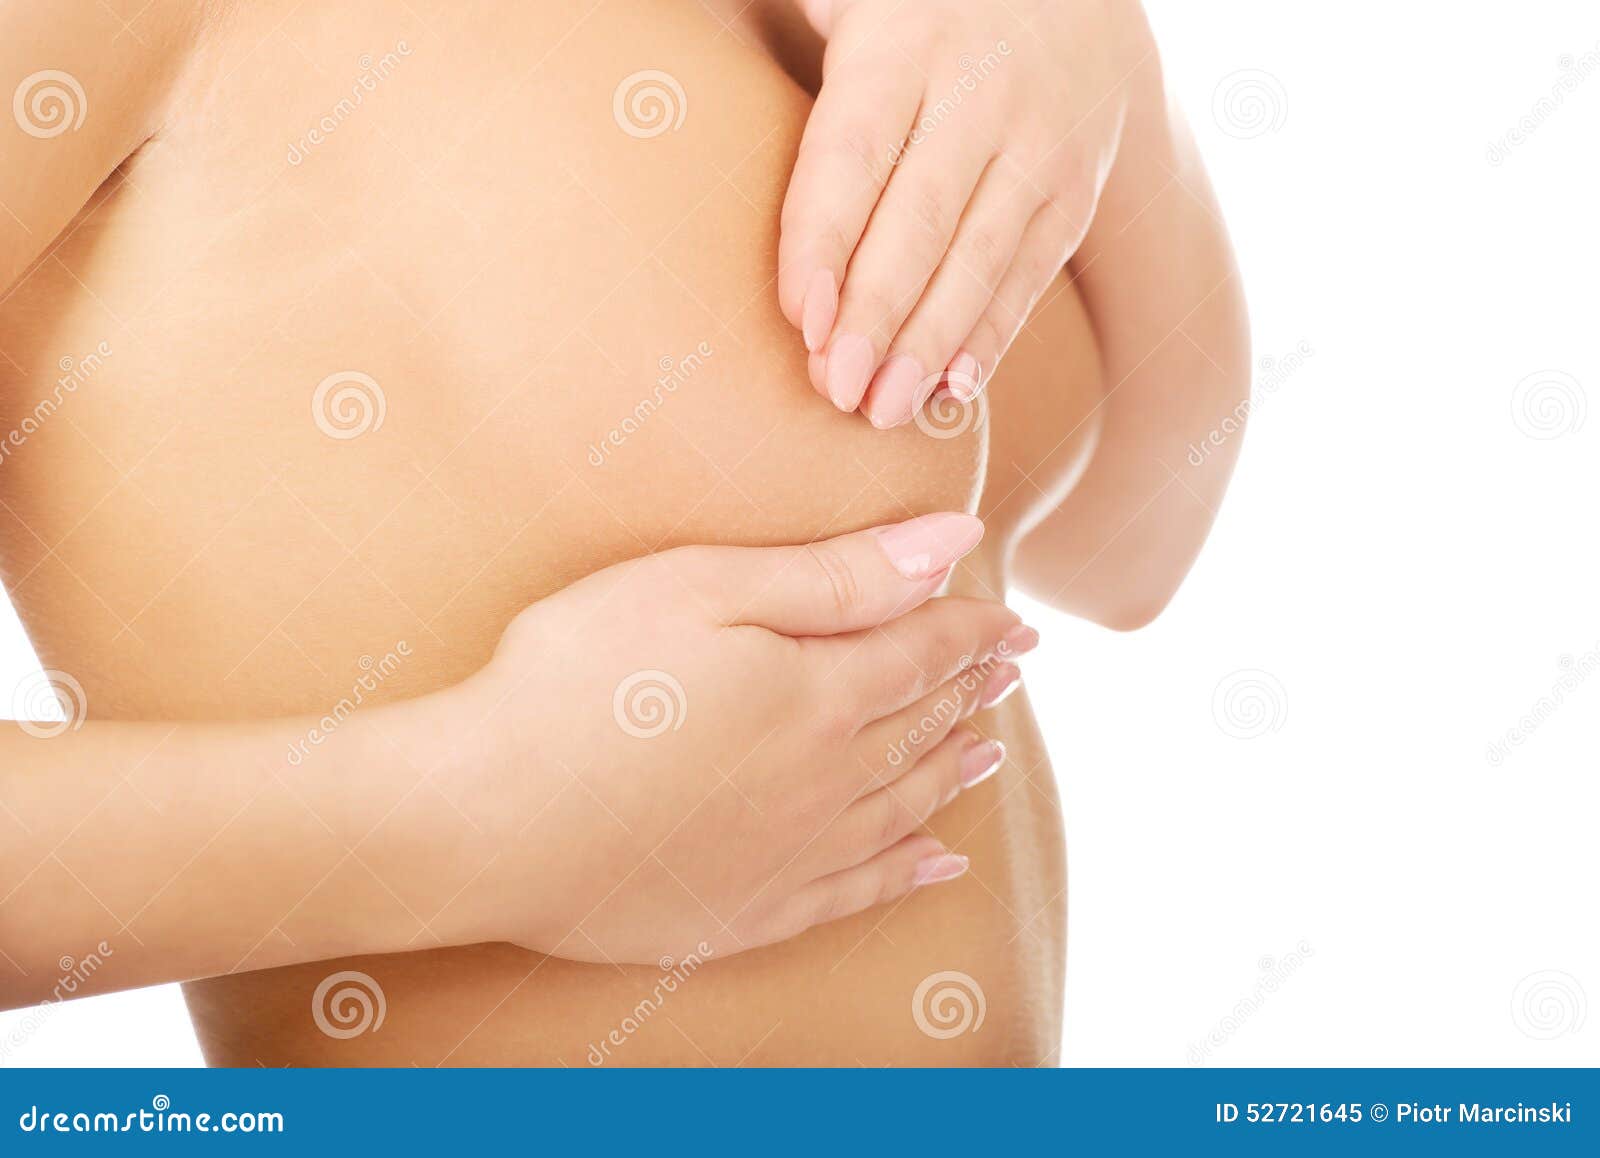 женская грудь и матка фото 85